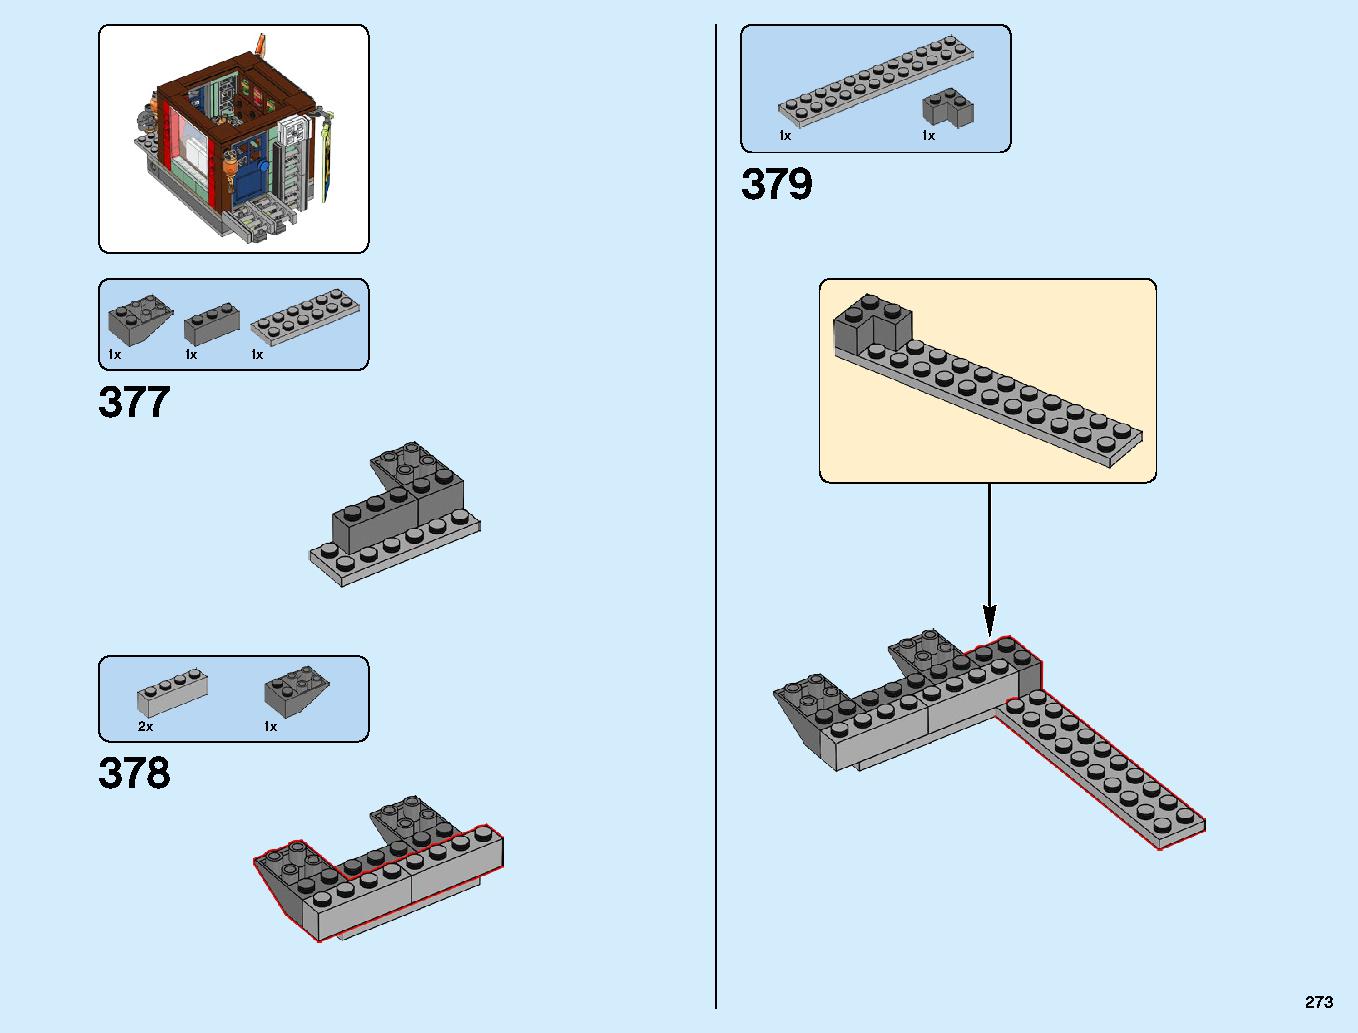 ニンジャゴーシティ・ポートパーク 70657 レゴの商品情報 レゴの説明書・組立方法 273 page